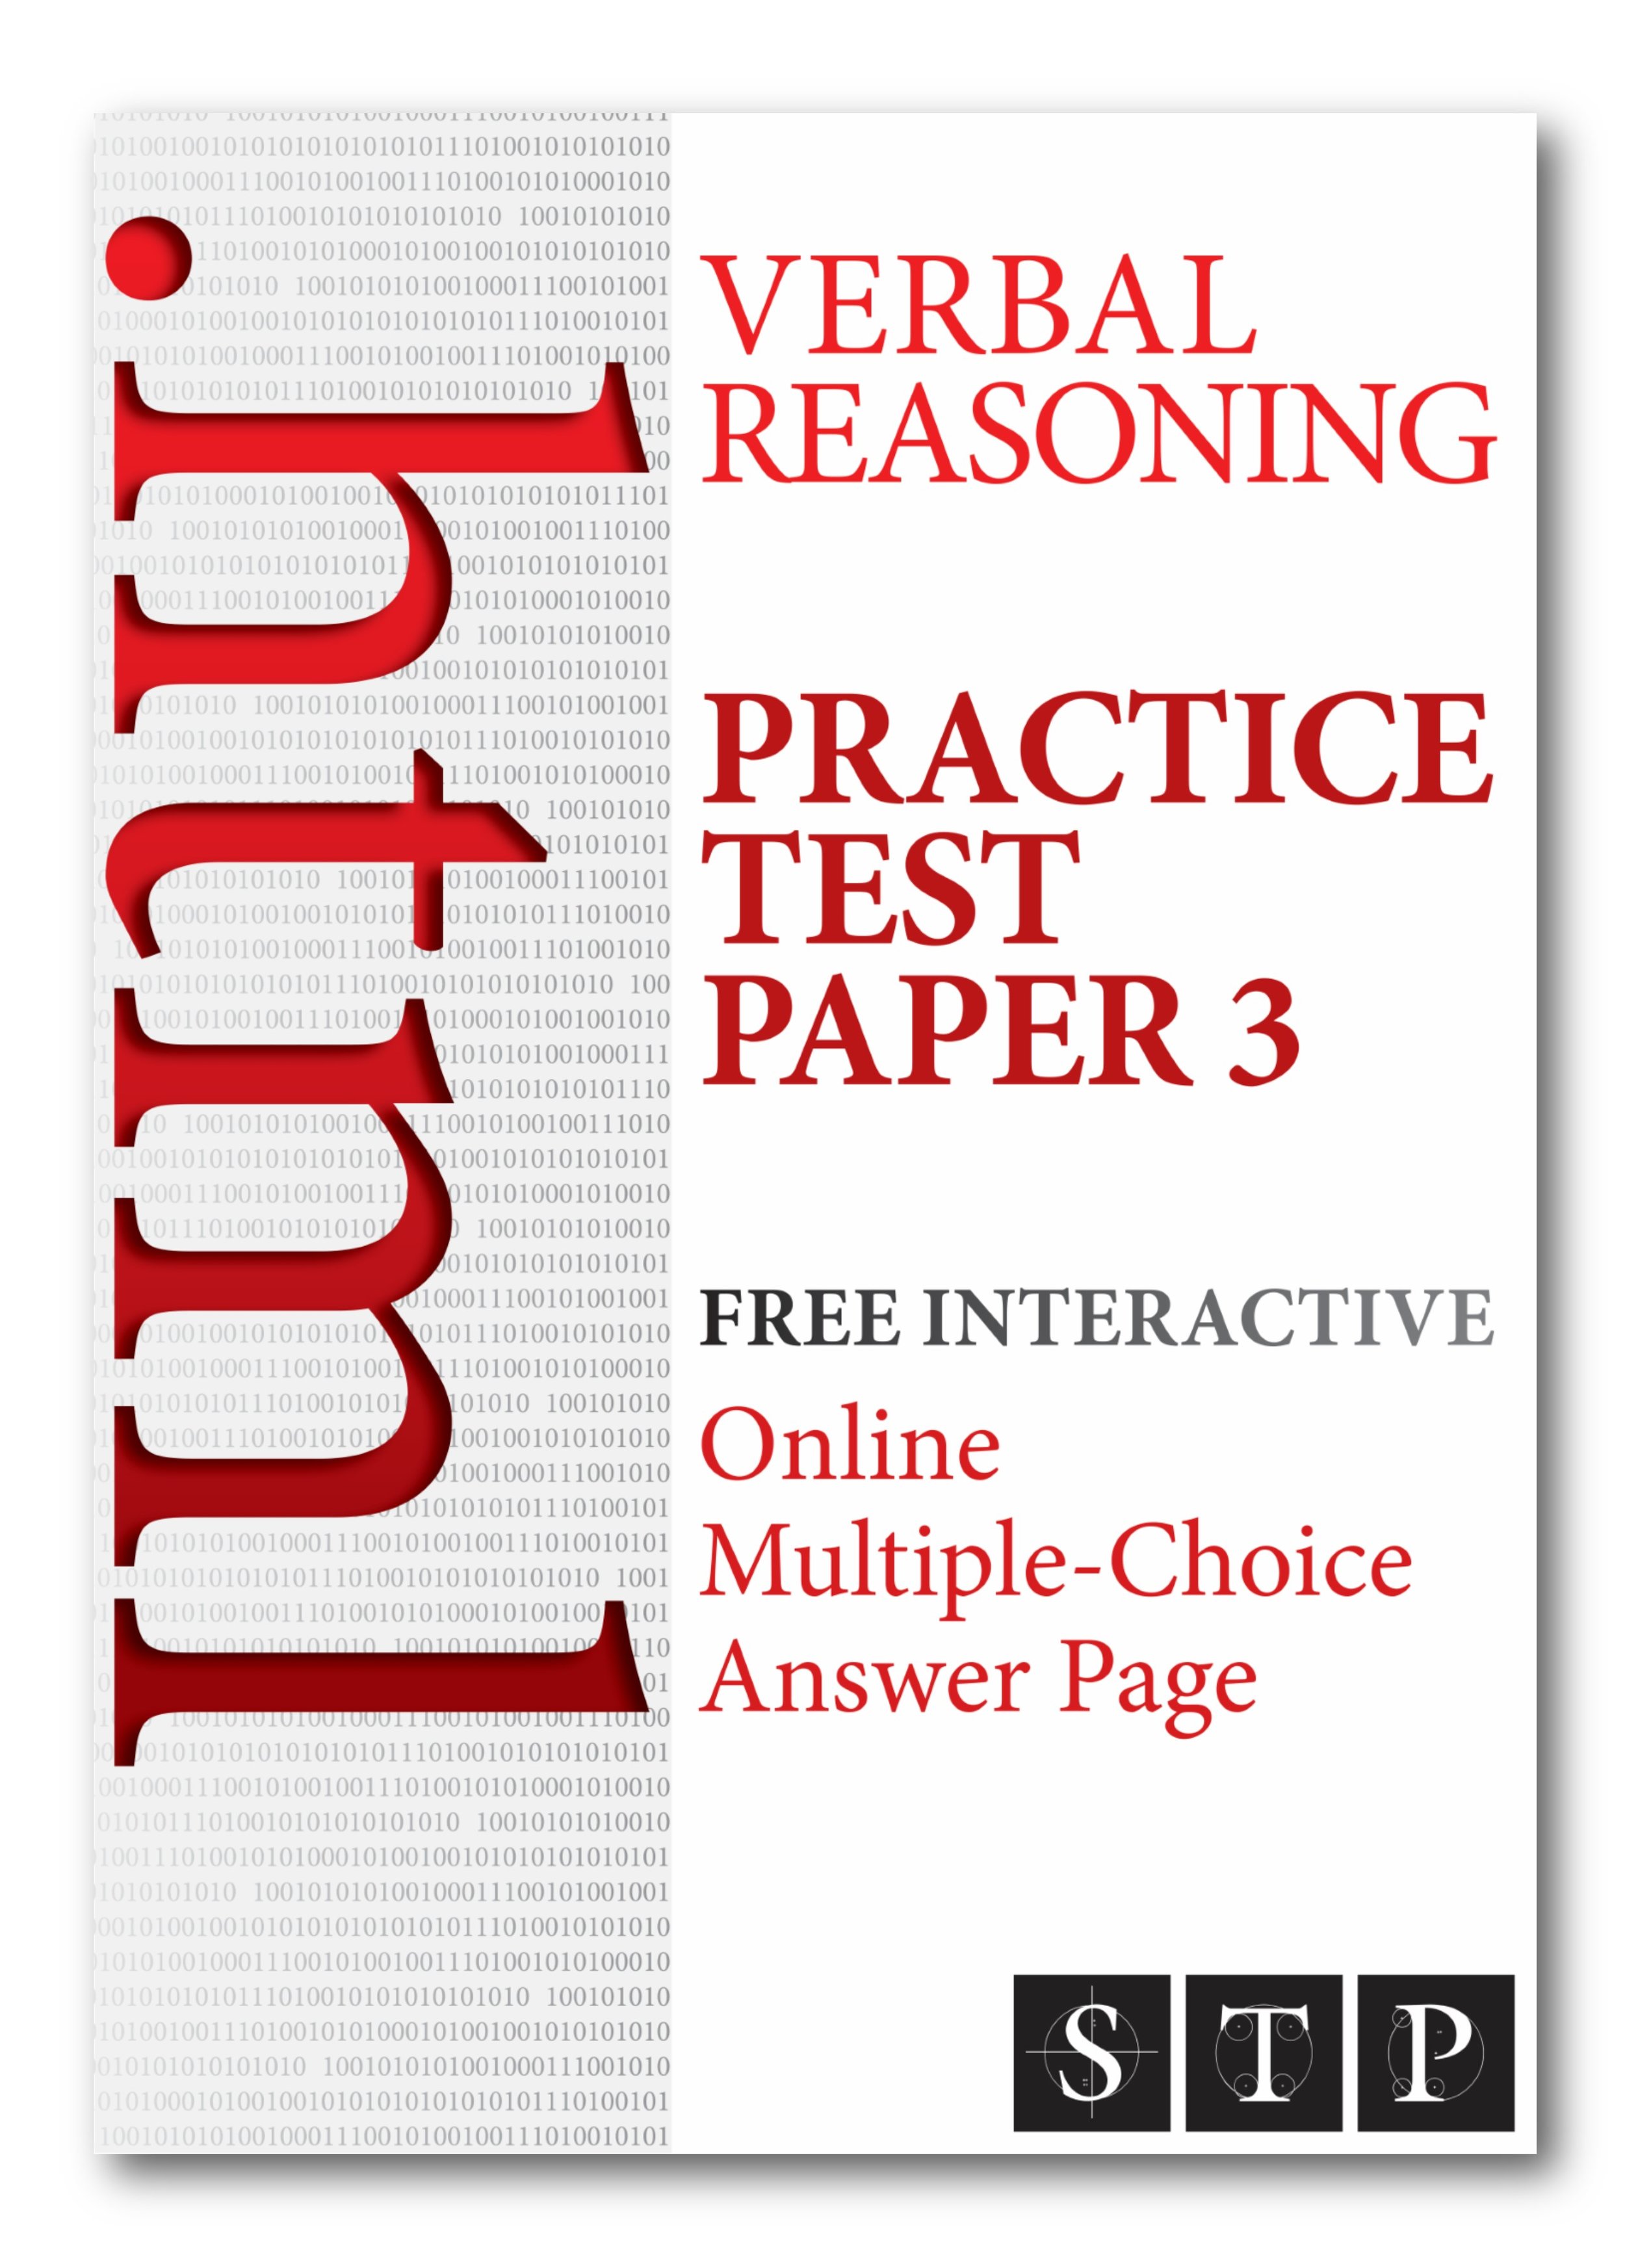 OAP 11+ Verbal Reasoning Practice Test 3 (InDesign).jpg